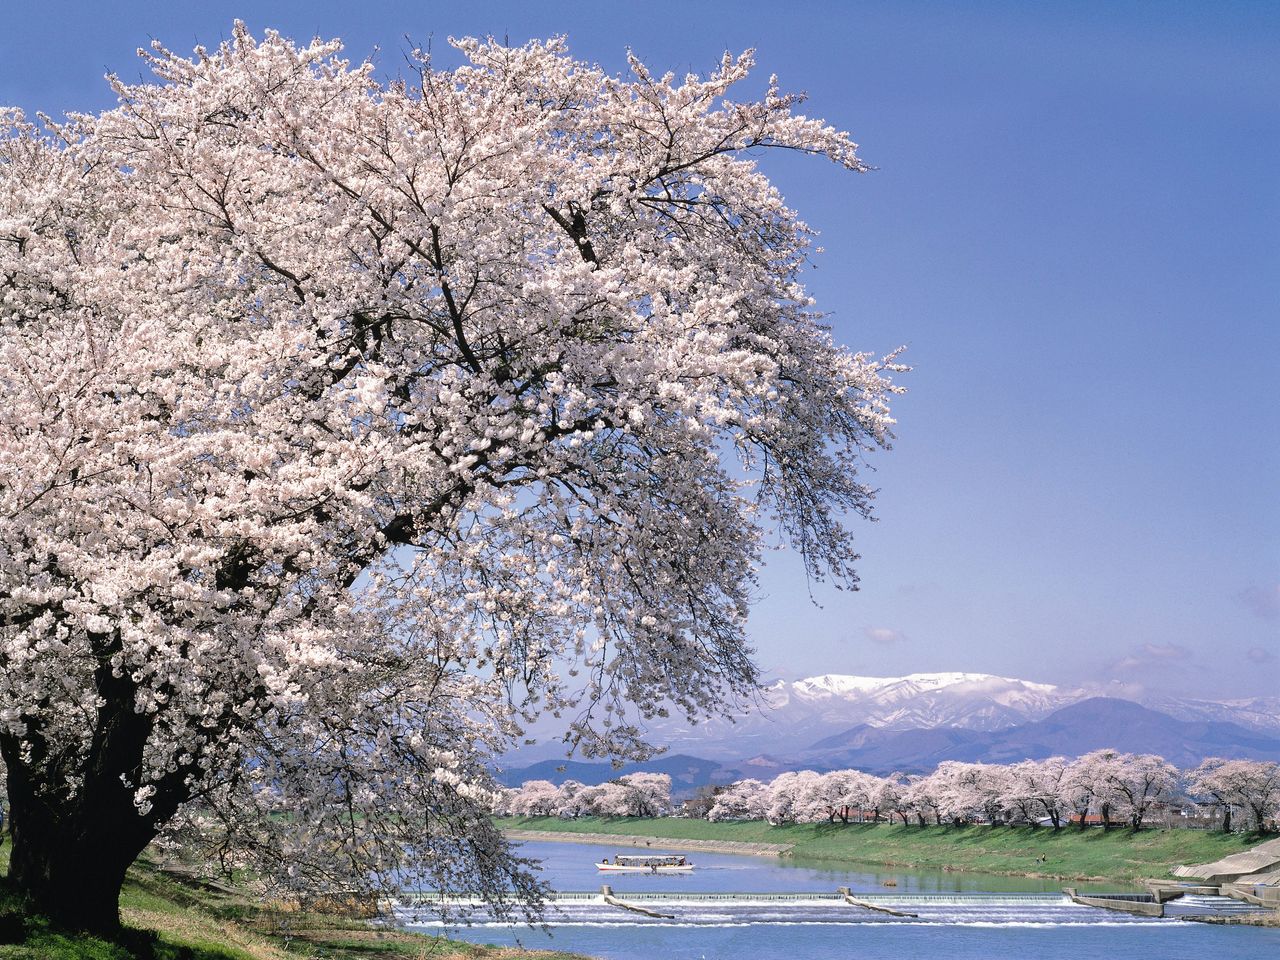 Durante la época de floración de los cerezos se puede dar un paseo en barca por el río Shiroishi (imagen cortesía del Departamento de Industria, Comercio y Turismo de Ōgawara).